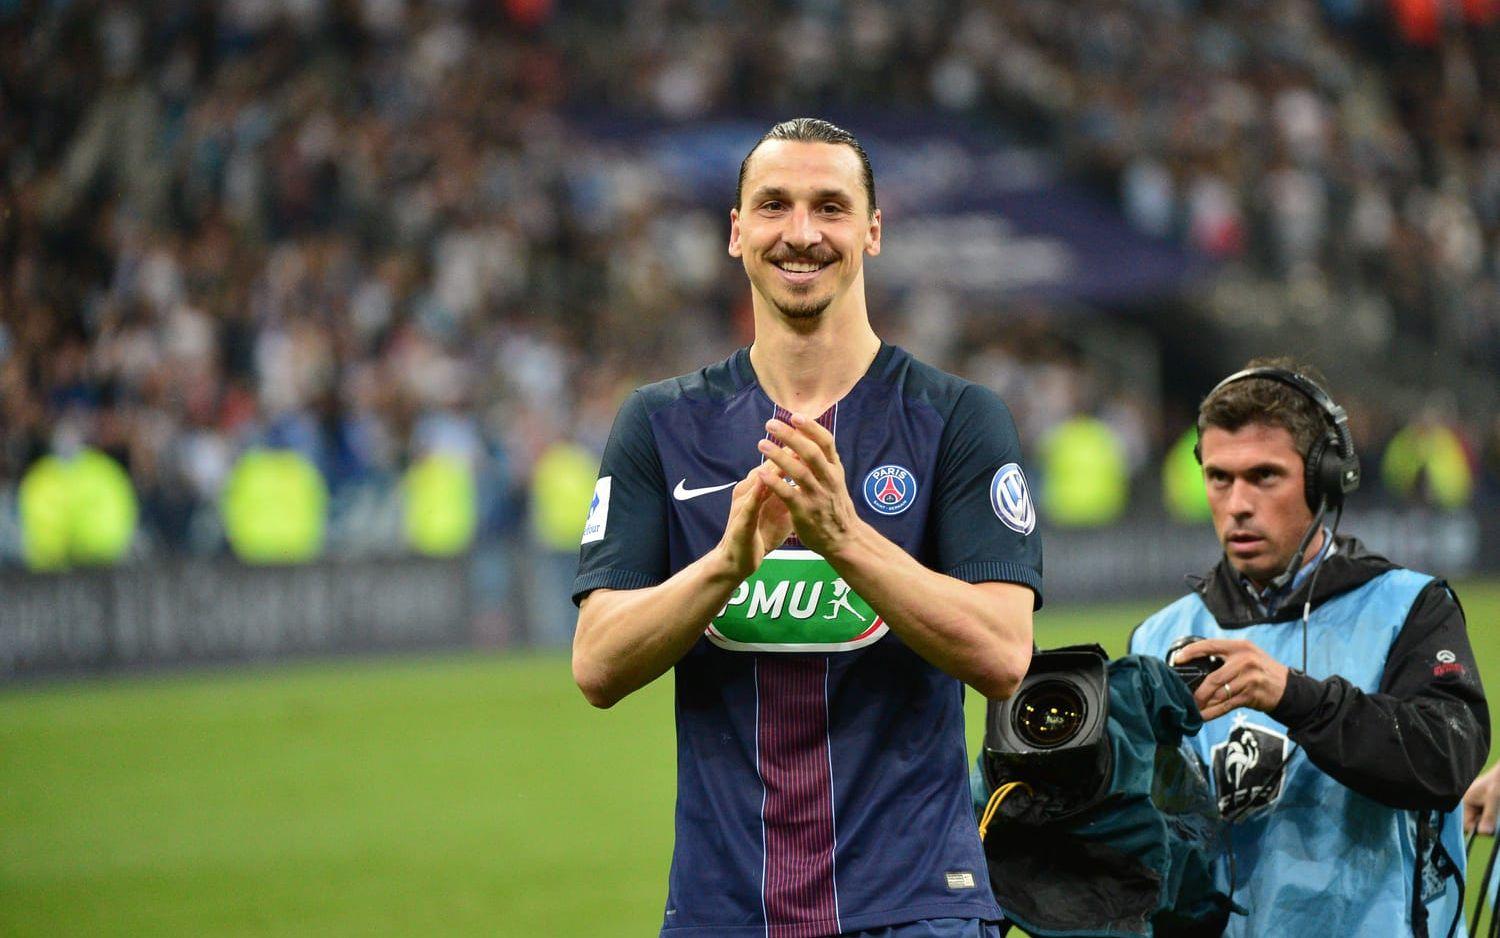 Senast det blev spel i Champions League för Zlatan var i PSG – hans sjätte klubb att representera i turneringen. Får han speltid för United så är han ensam rekordhållare. Bild: Bildbyrån